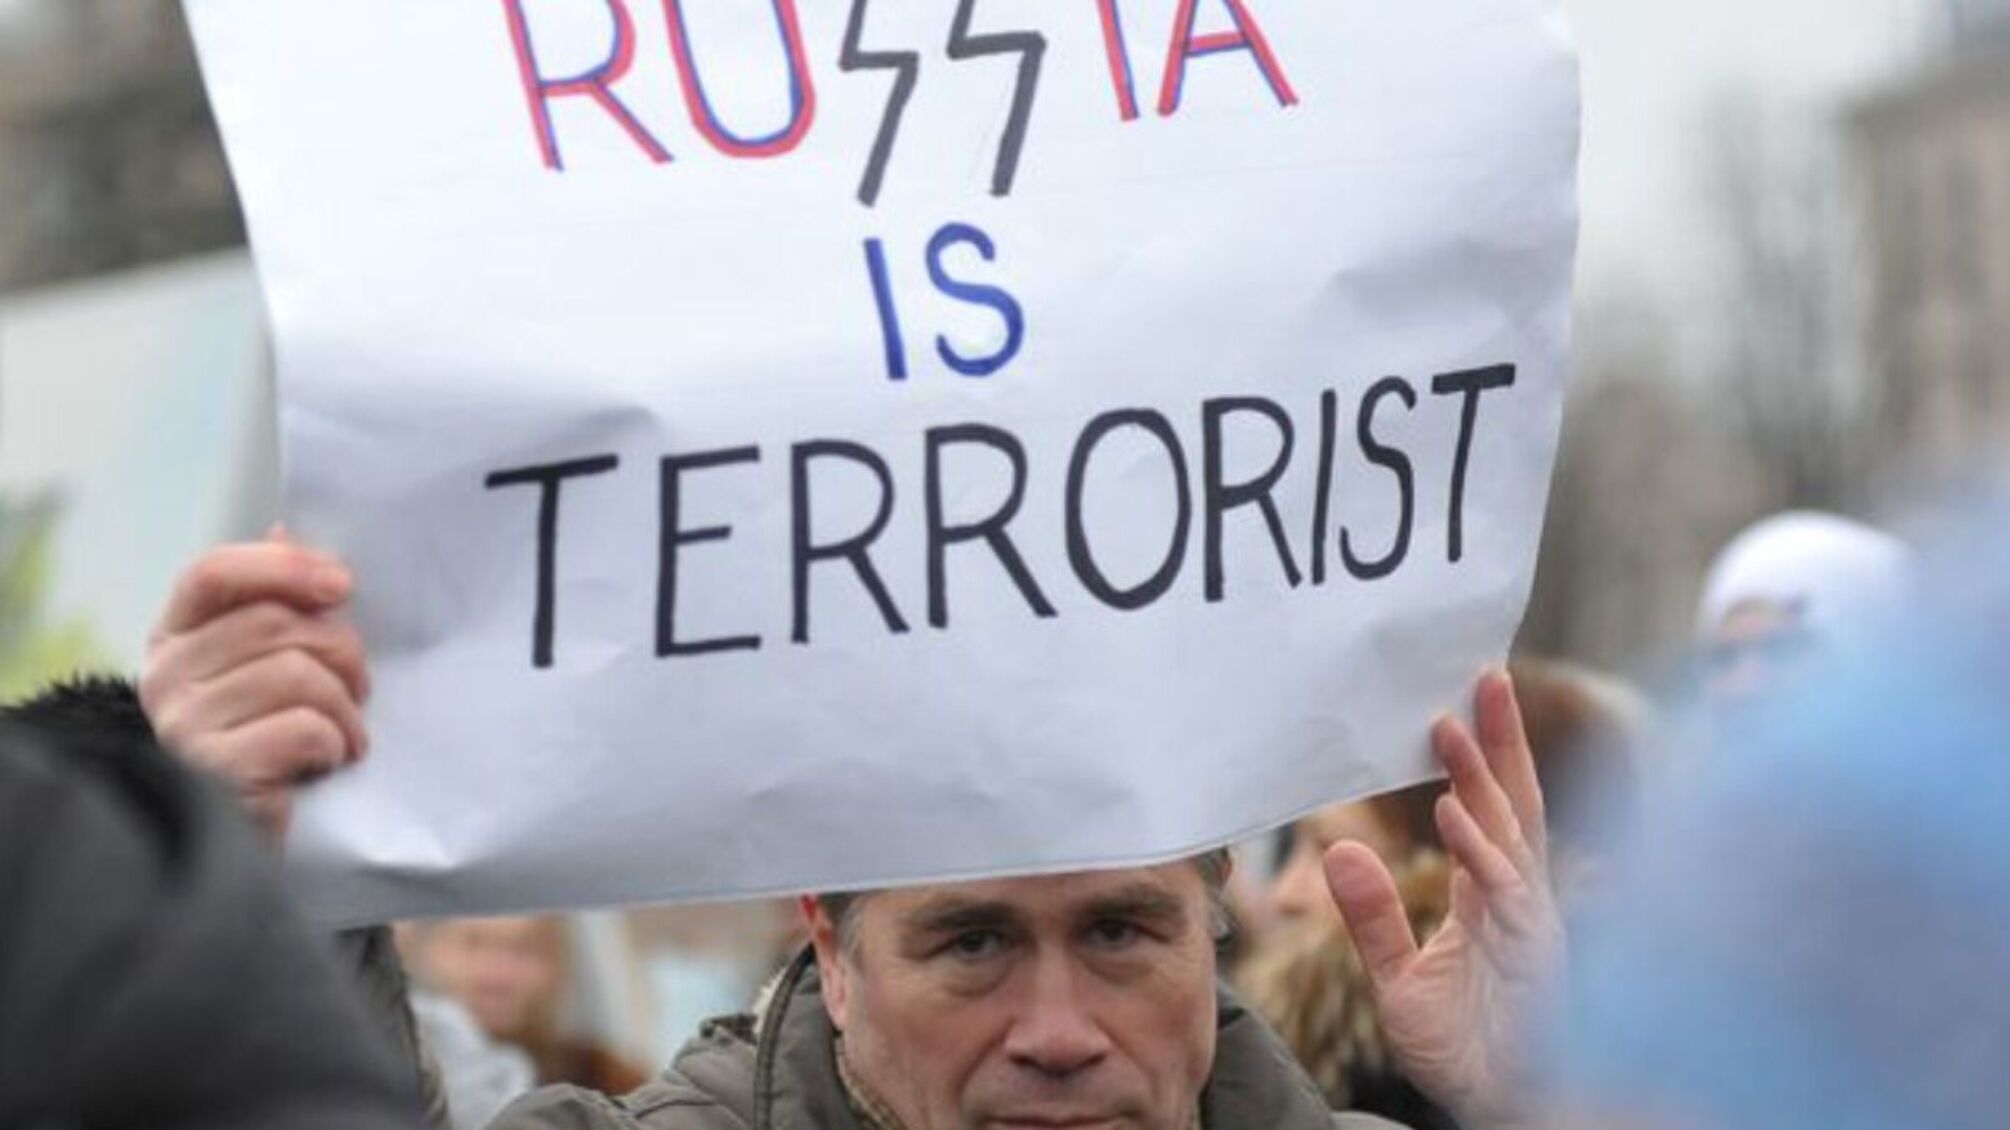 мужчина с плакатом russia is terrorist